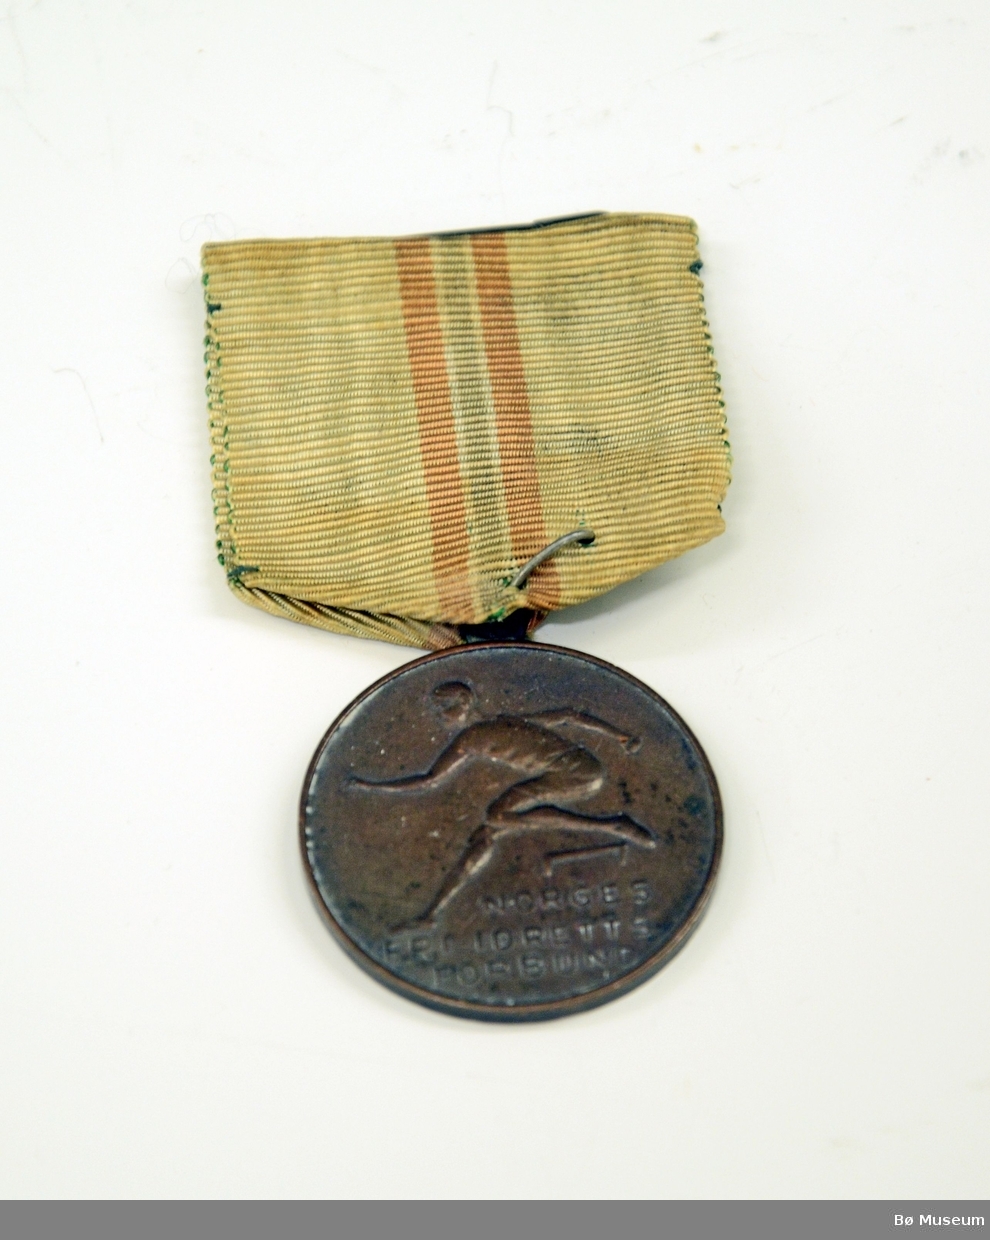 Medalje med innskrift:
NORGES FRI-IDRETTS FORBUND
Bånd i hvitt, med det norske flaggets farger i en stripe - svært falmet og gulnet.